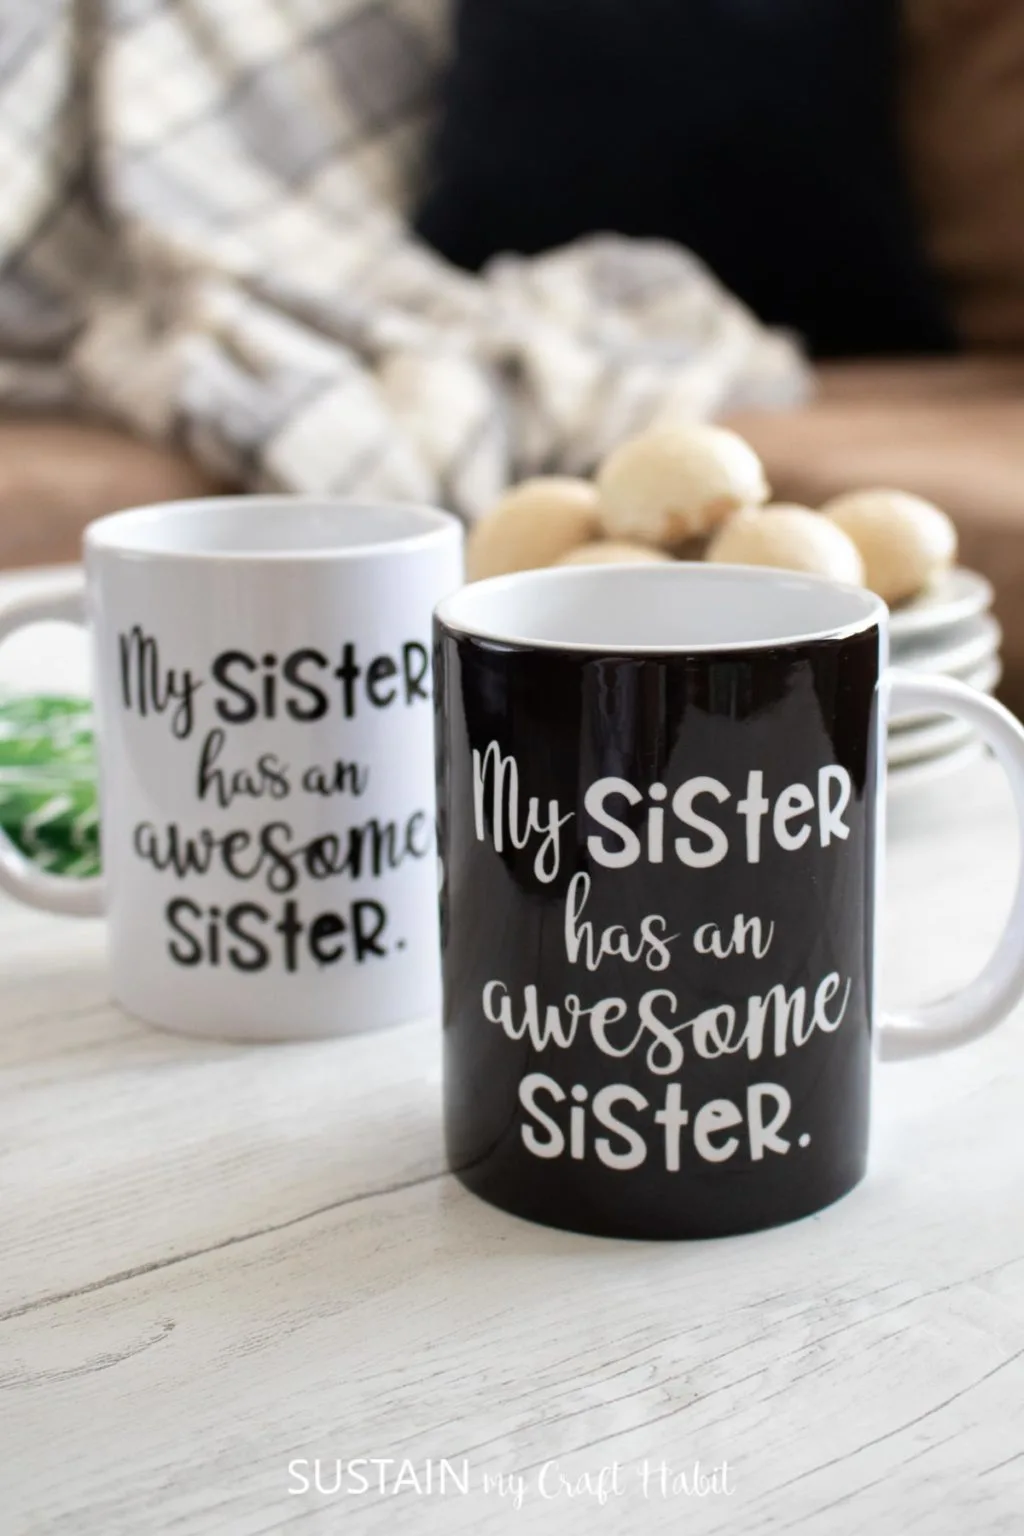 my sister has an awesome sister saying on coffee mug